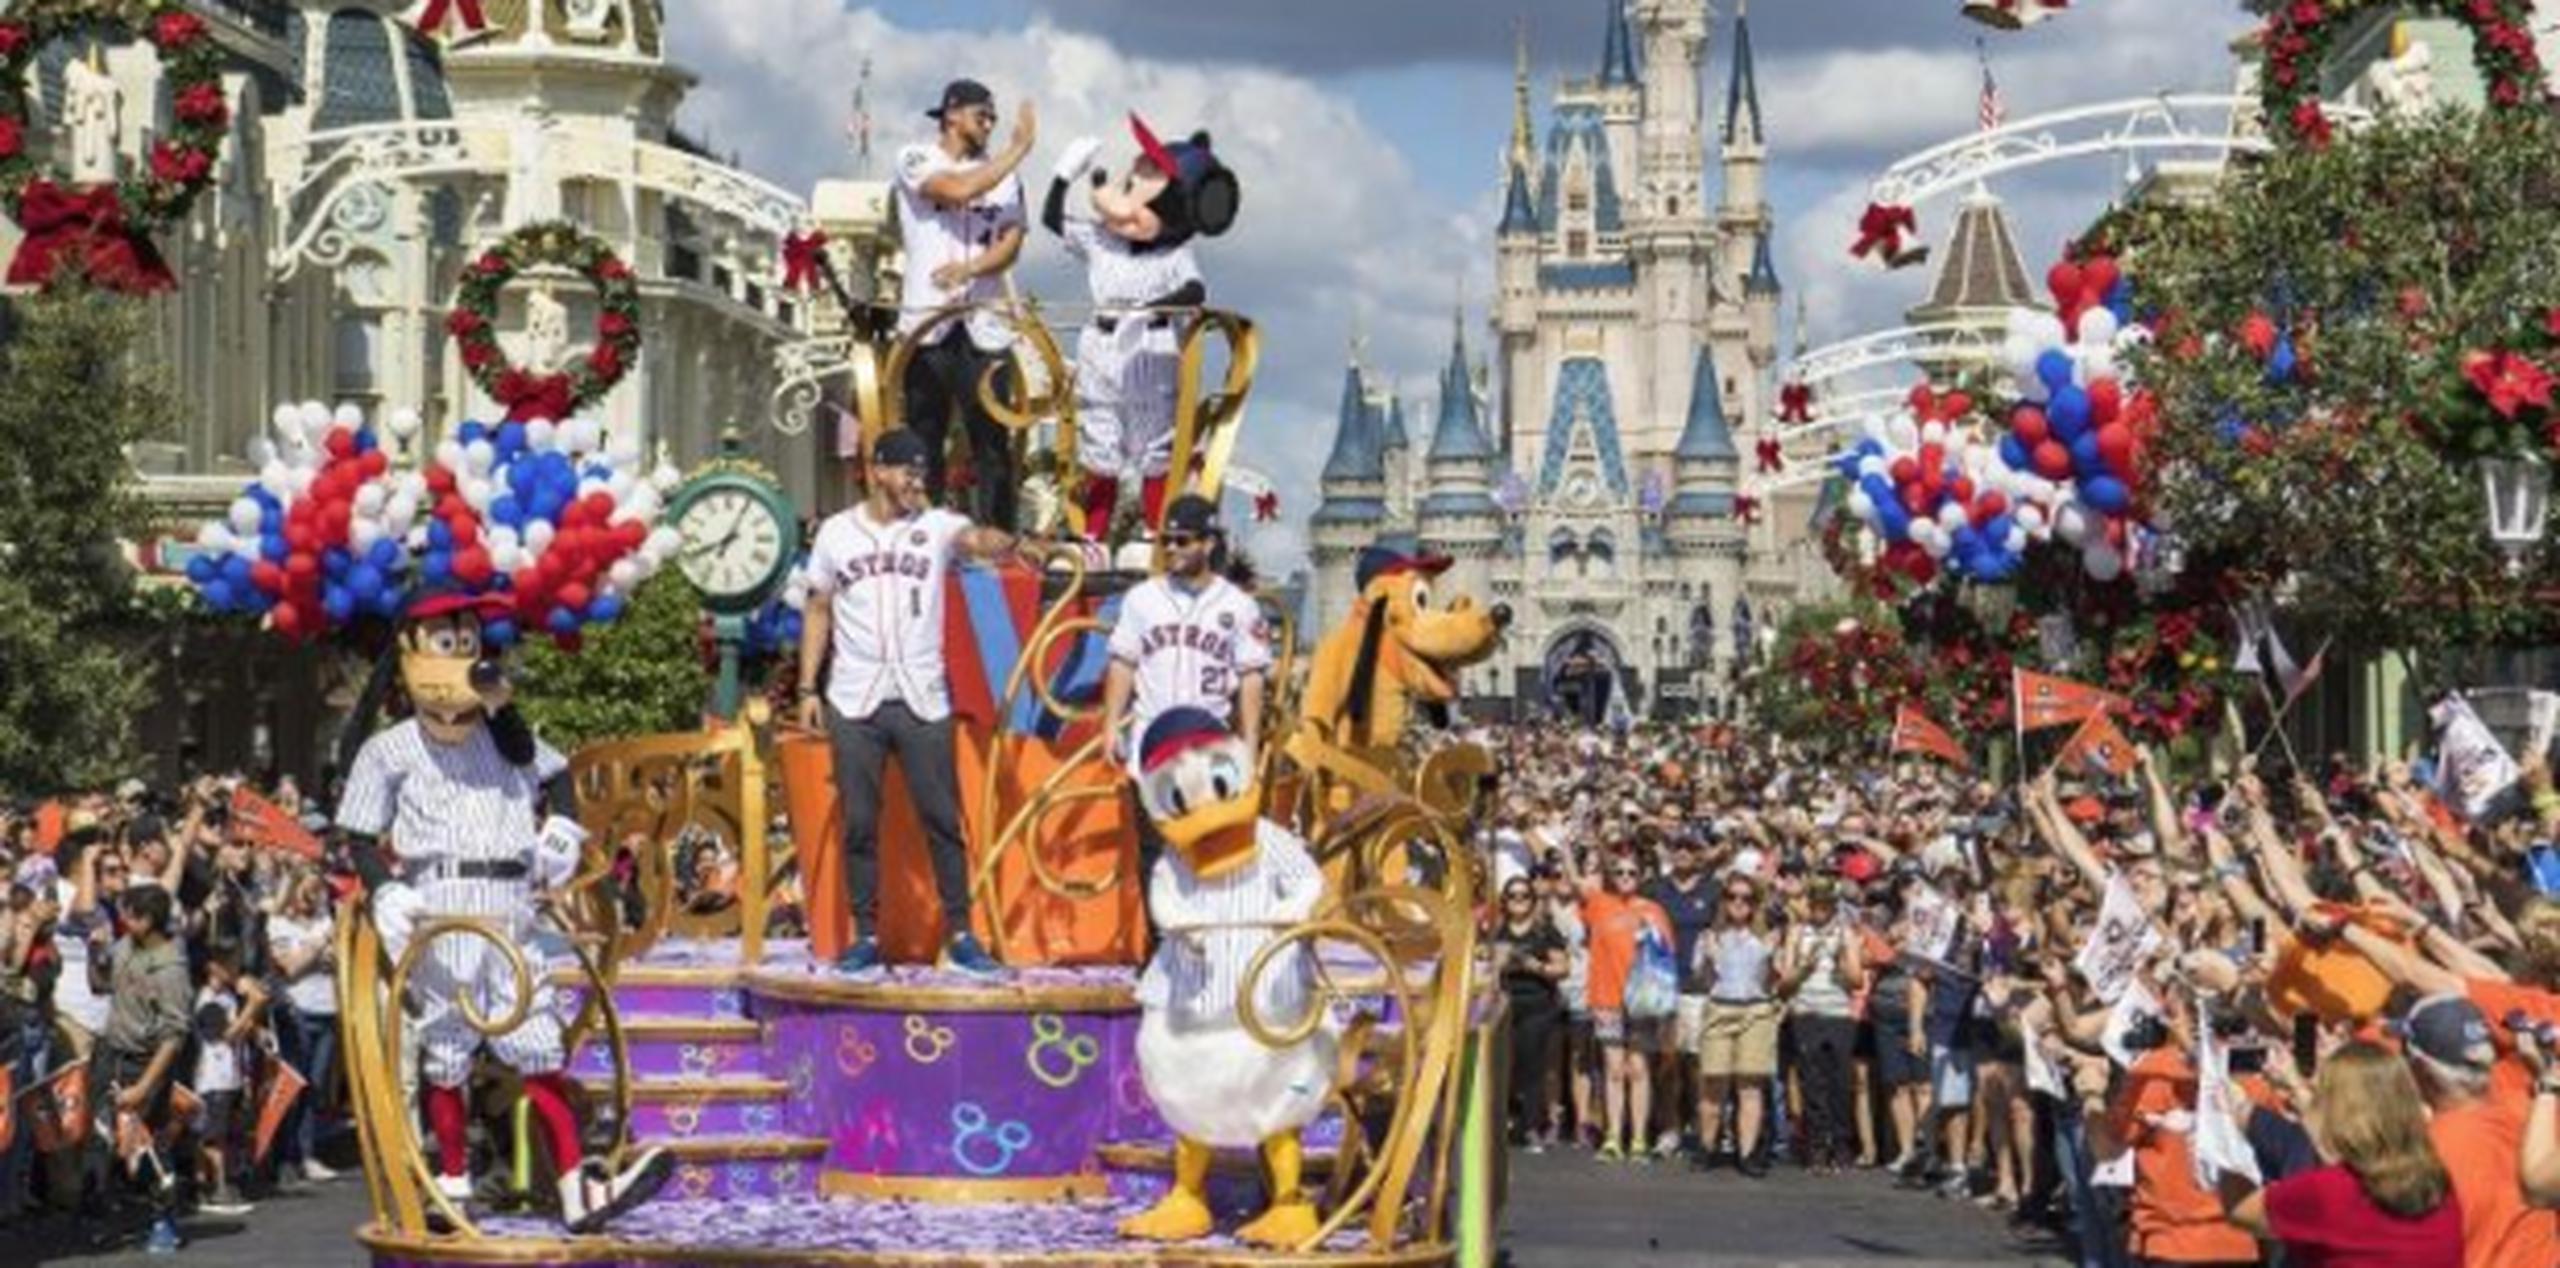 El desfile, en el que también participaron varios personajes de Disney, se llevó a cabo al mediodía. (Suministrada)